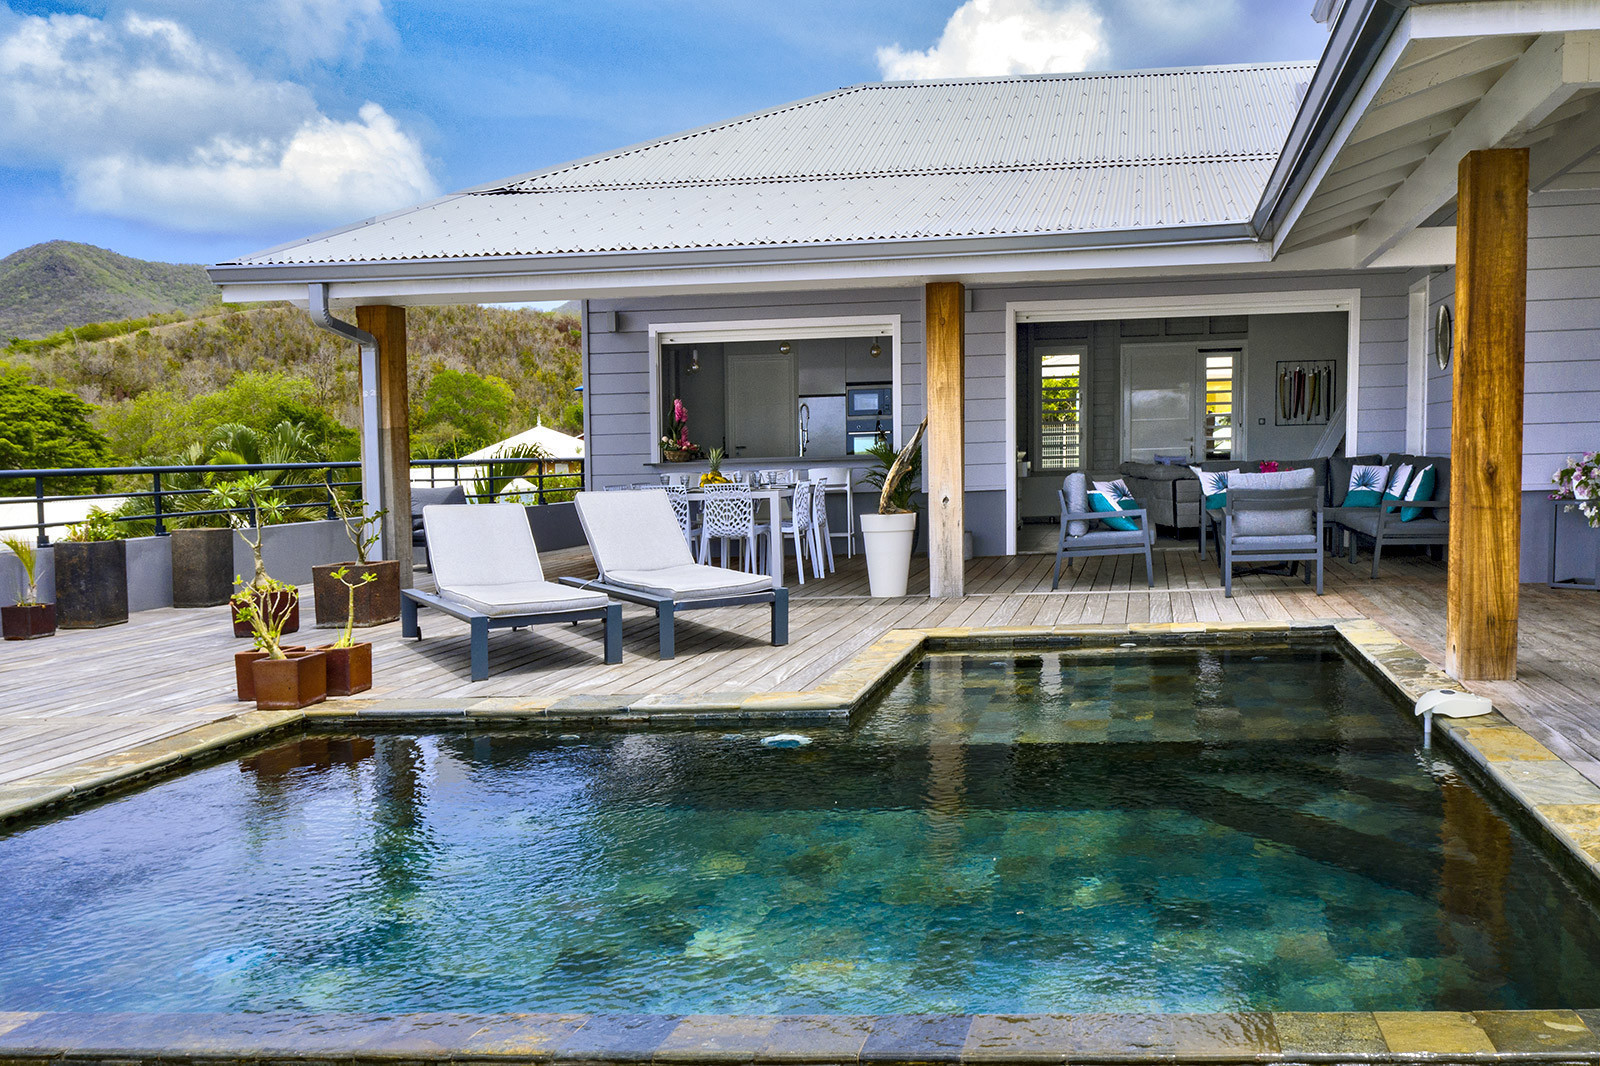 La PERLE BLEUE location villa le Diamant Martinique piscine vue mer 3 chambres - 